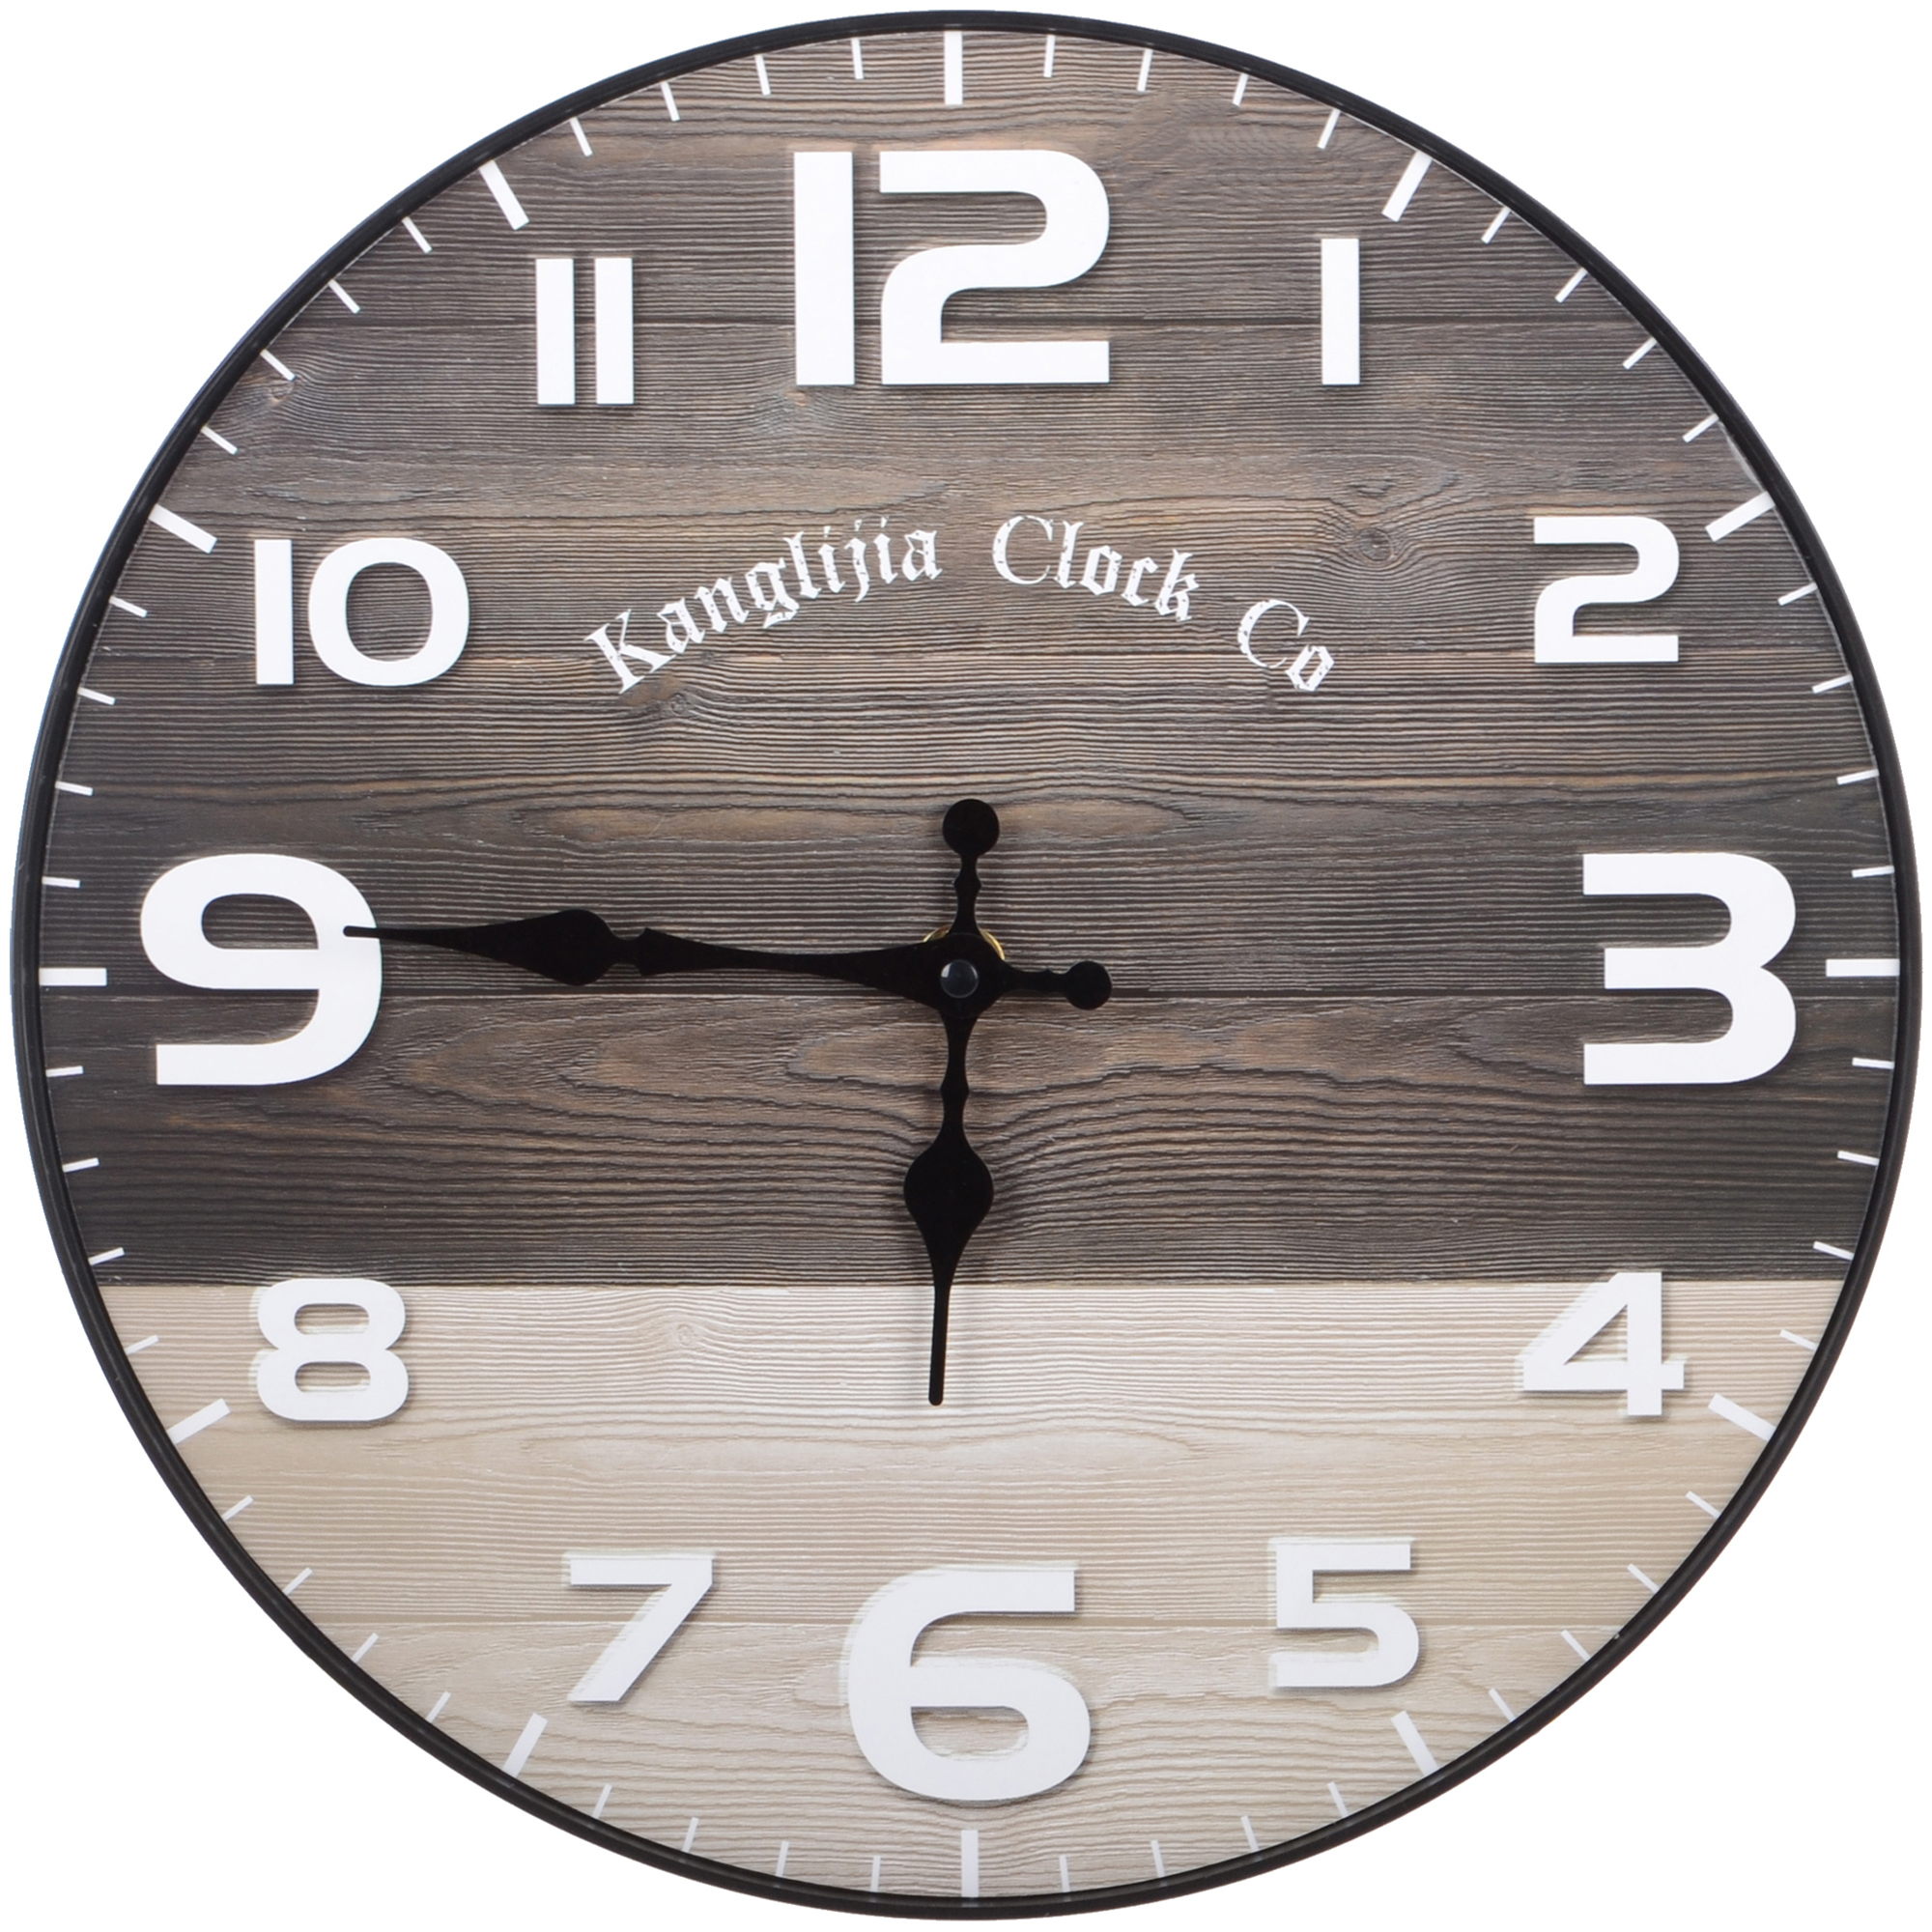 Часы настенные Kanglijia Clock коричневые 29,5х29,5х3,5 см круглые настенные часы